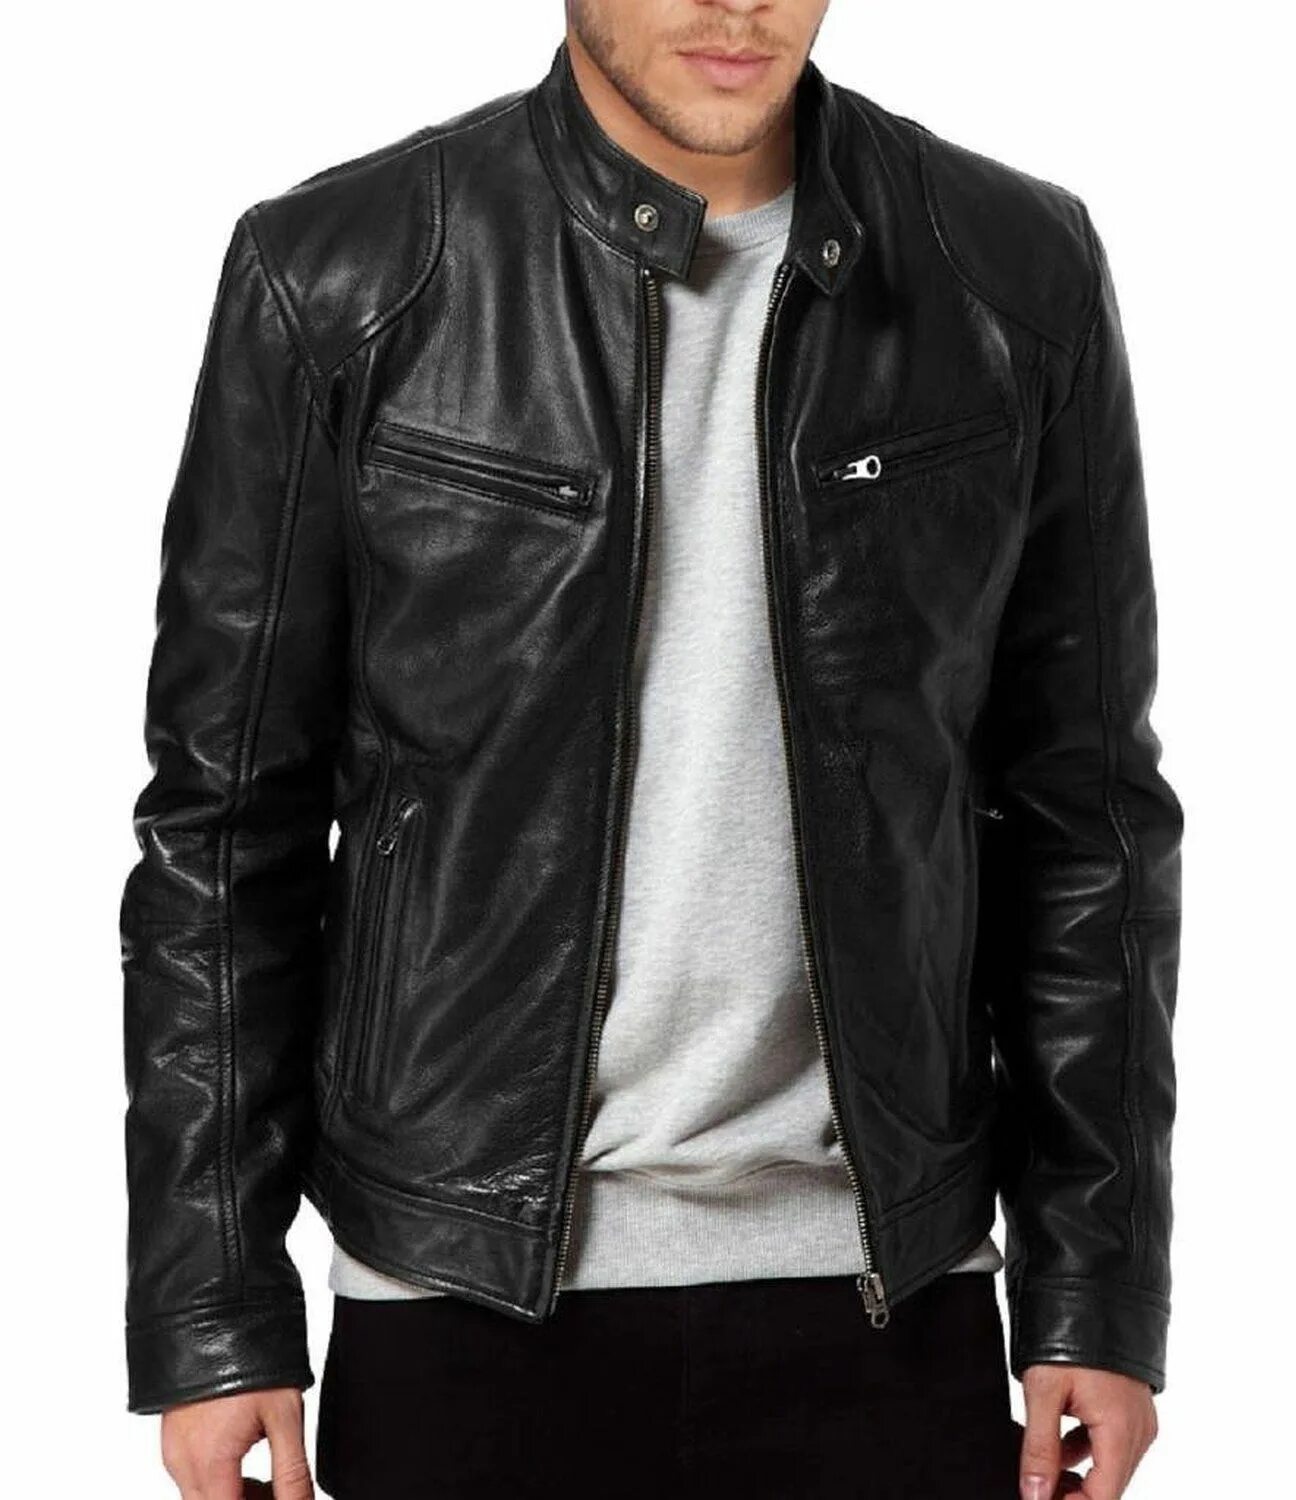 New men Genuine Lambskin Leather Jacket Black Slim Fit Biker Motorcycle Jacket. Lucky brand куртка кожаная. Brown Slim Fit Biker Genuine Leather. Ejaz куртка кожаная мужская.